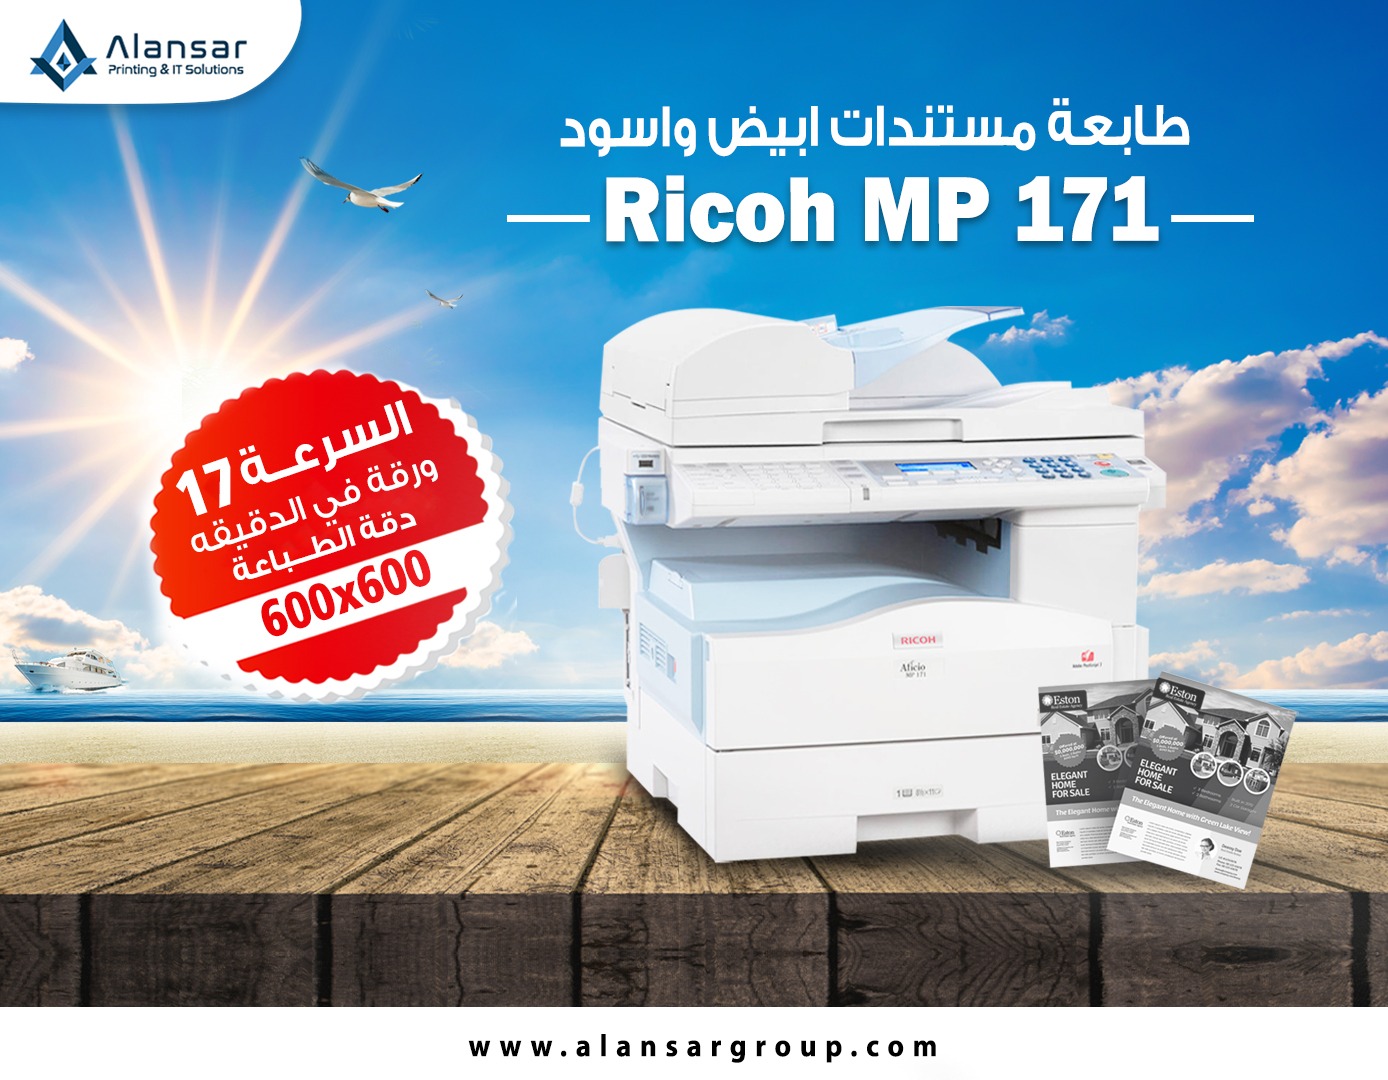 Get the Ricoh Aficio MP 171 Multifunctional Copier with warranty